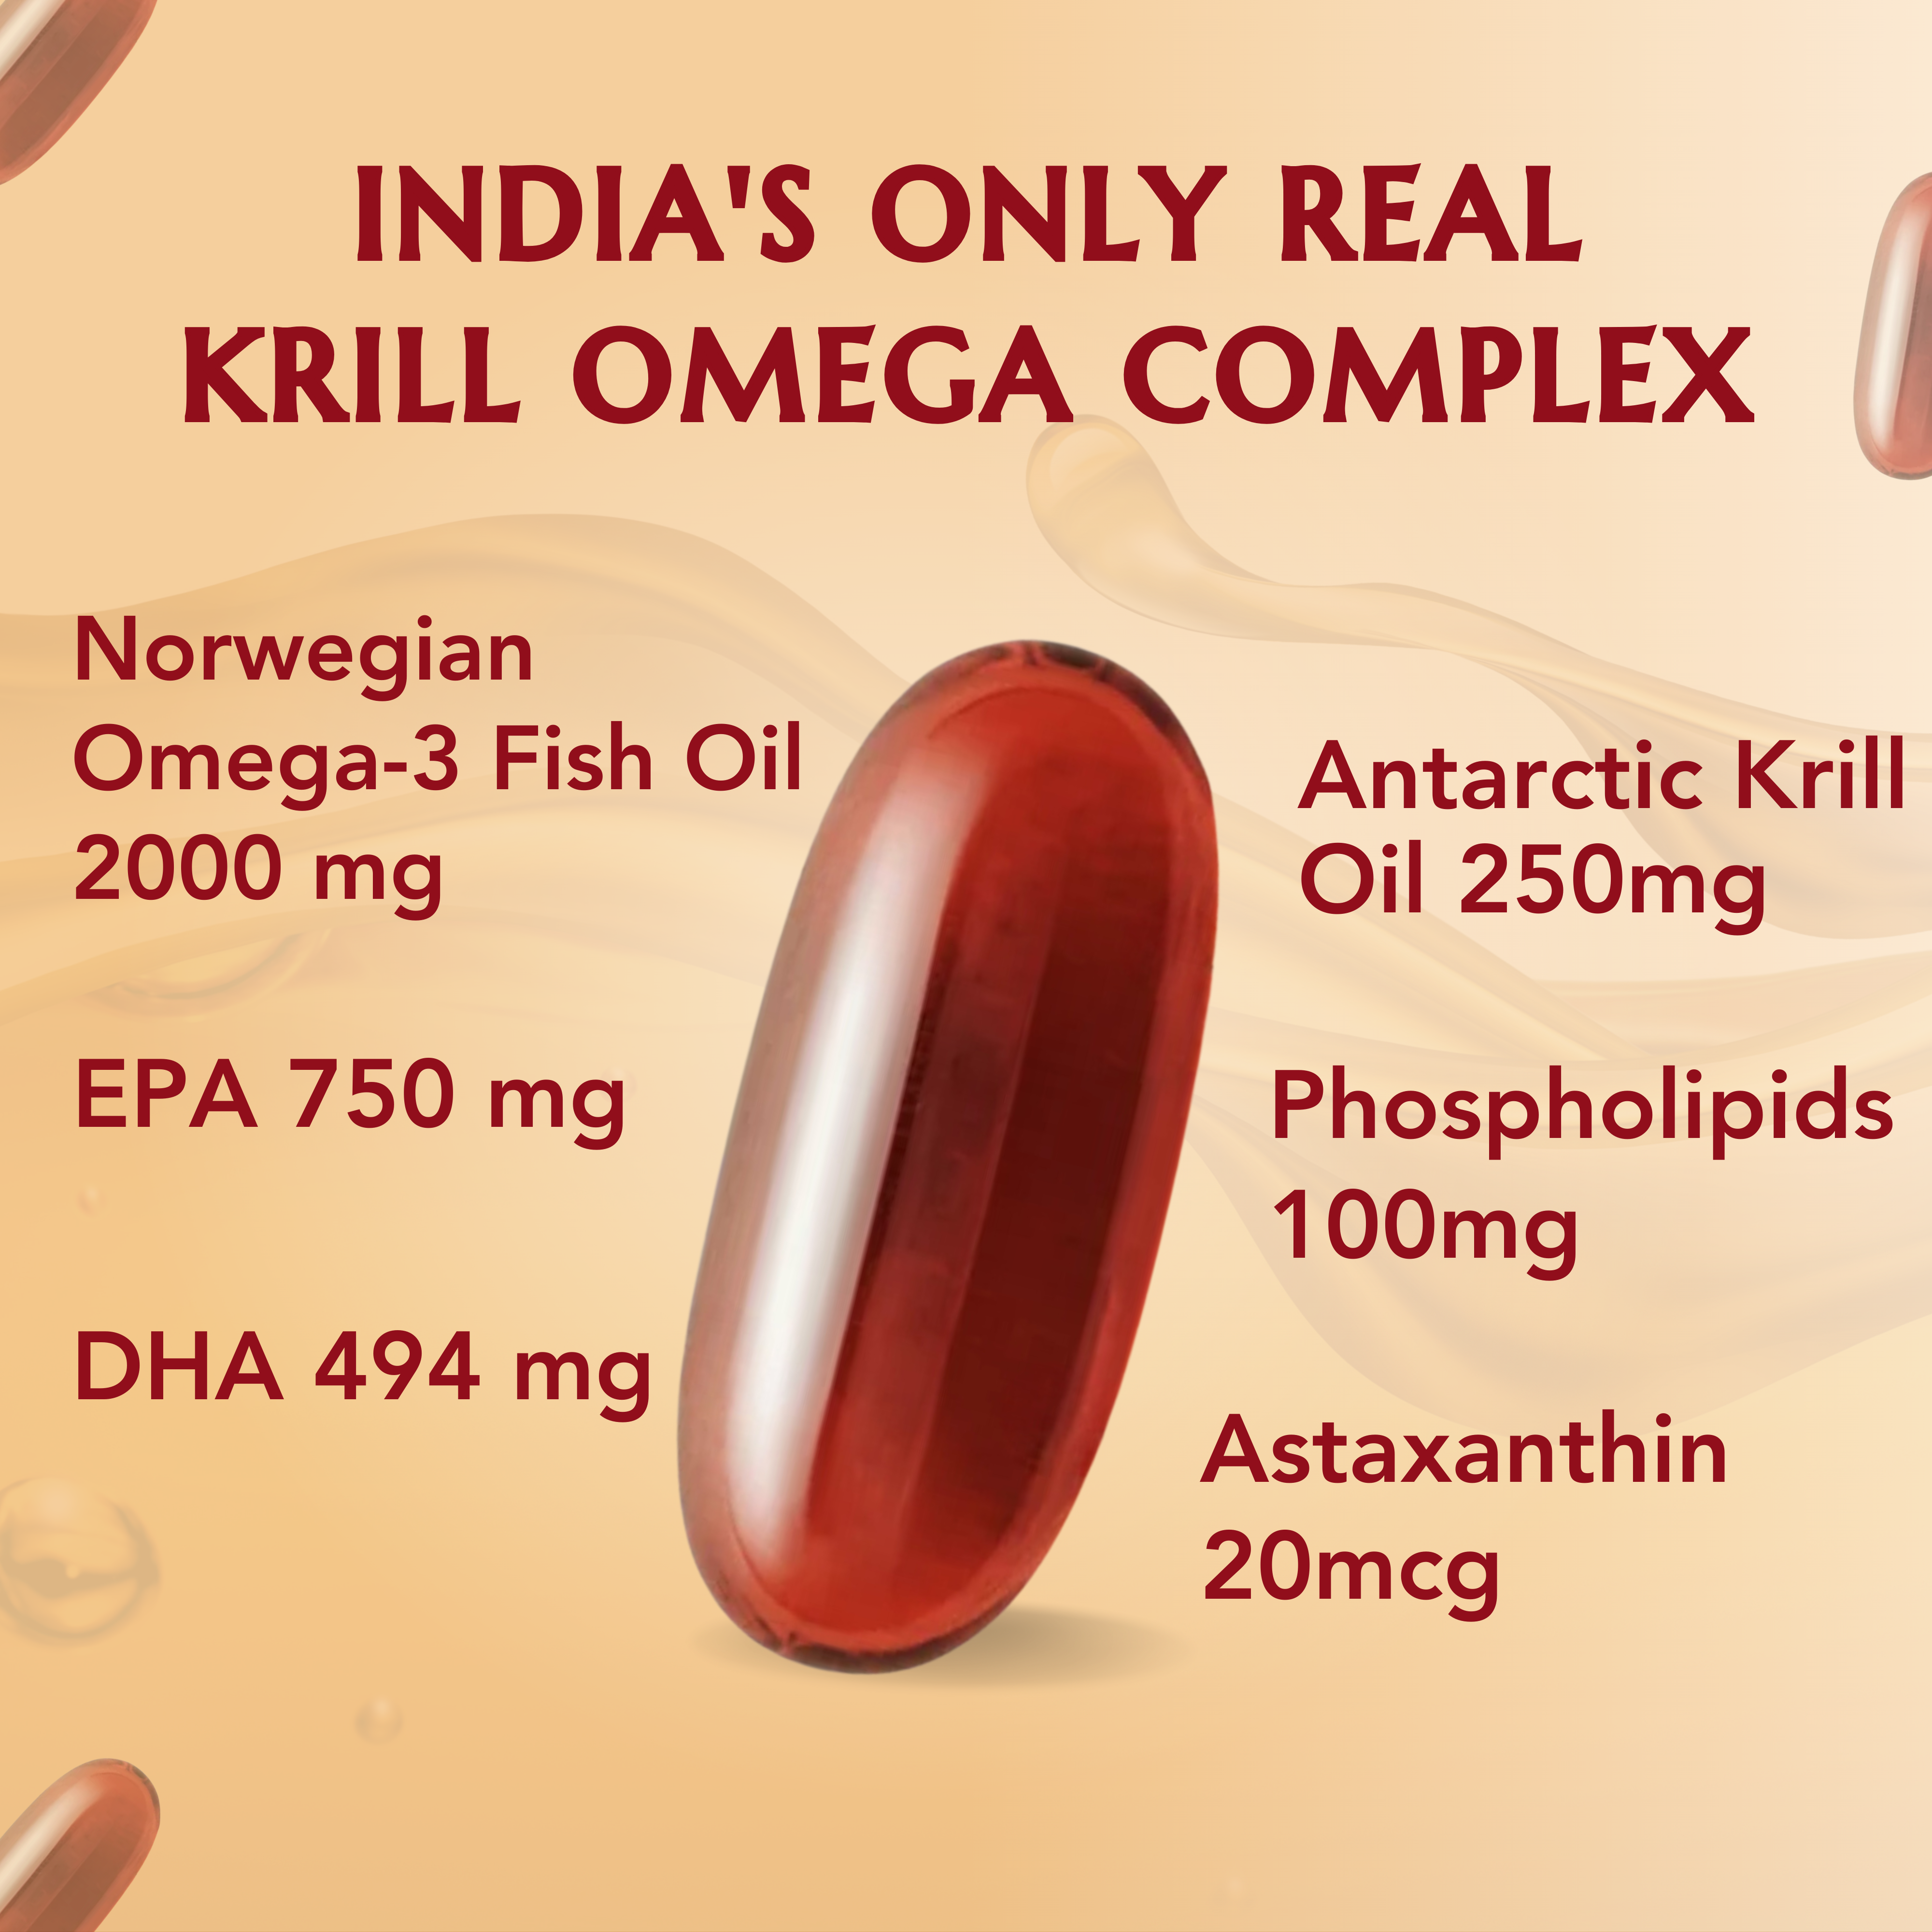 Krill Omega Complex